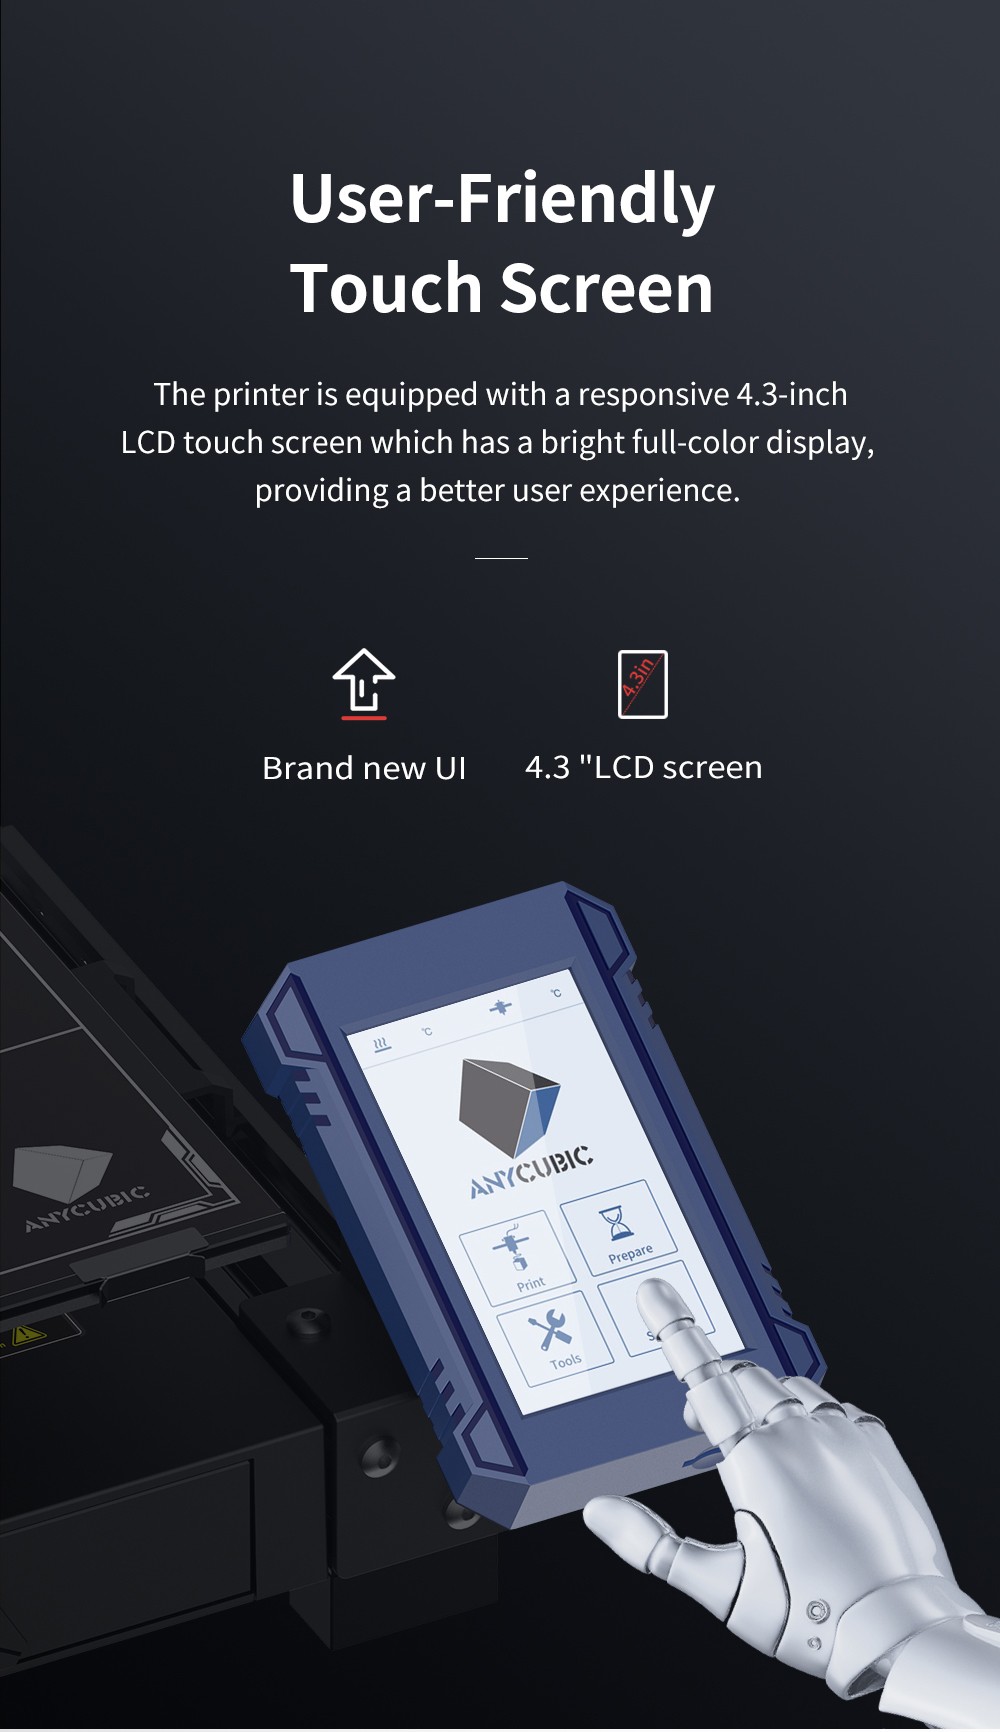 Imprimante 3D Anycubic Kobra Plus,  mise à niveau automatique 25 points,  extrudeuse Bowden,  écran 4.3 pouces,  vitesse 180 mm/s,  350 x 300 x 300 mm